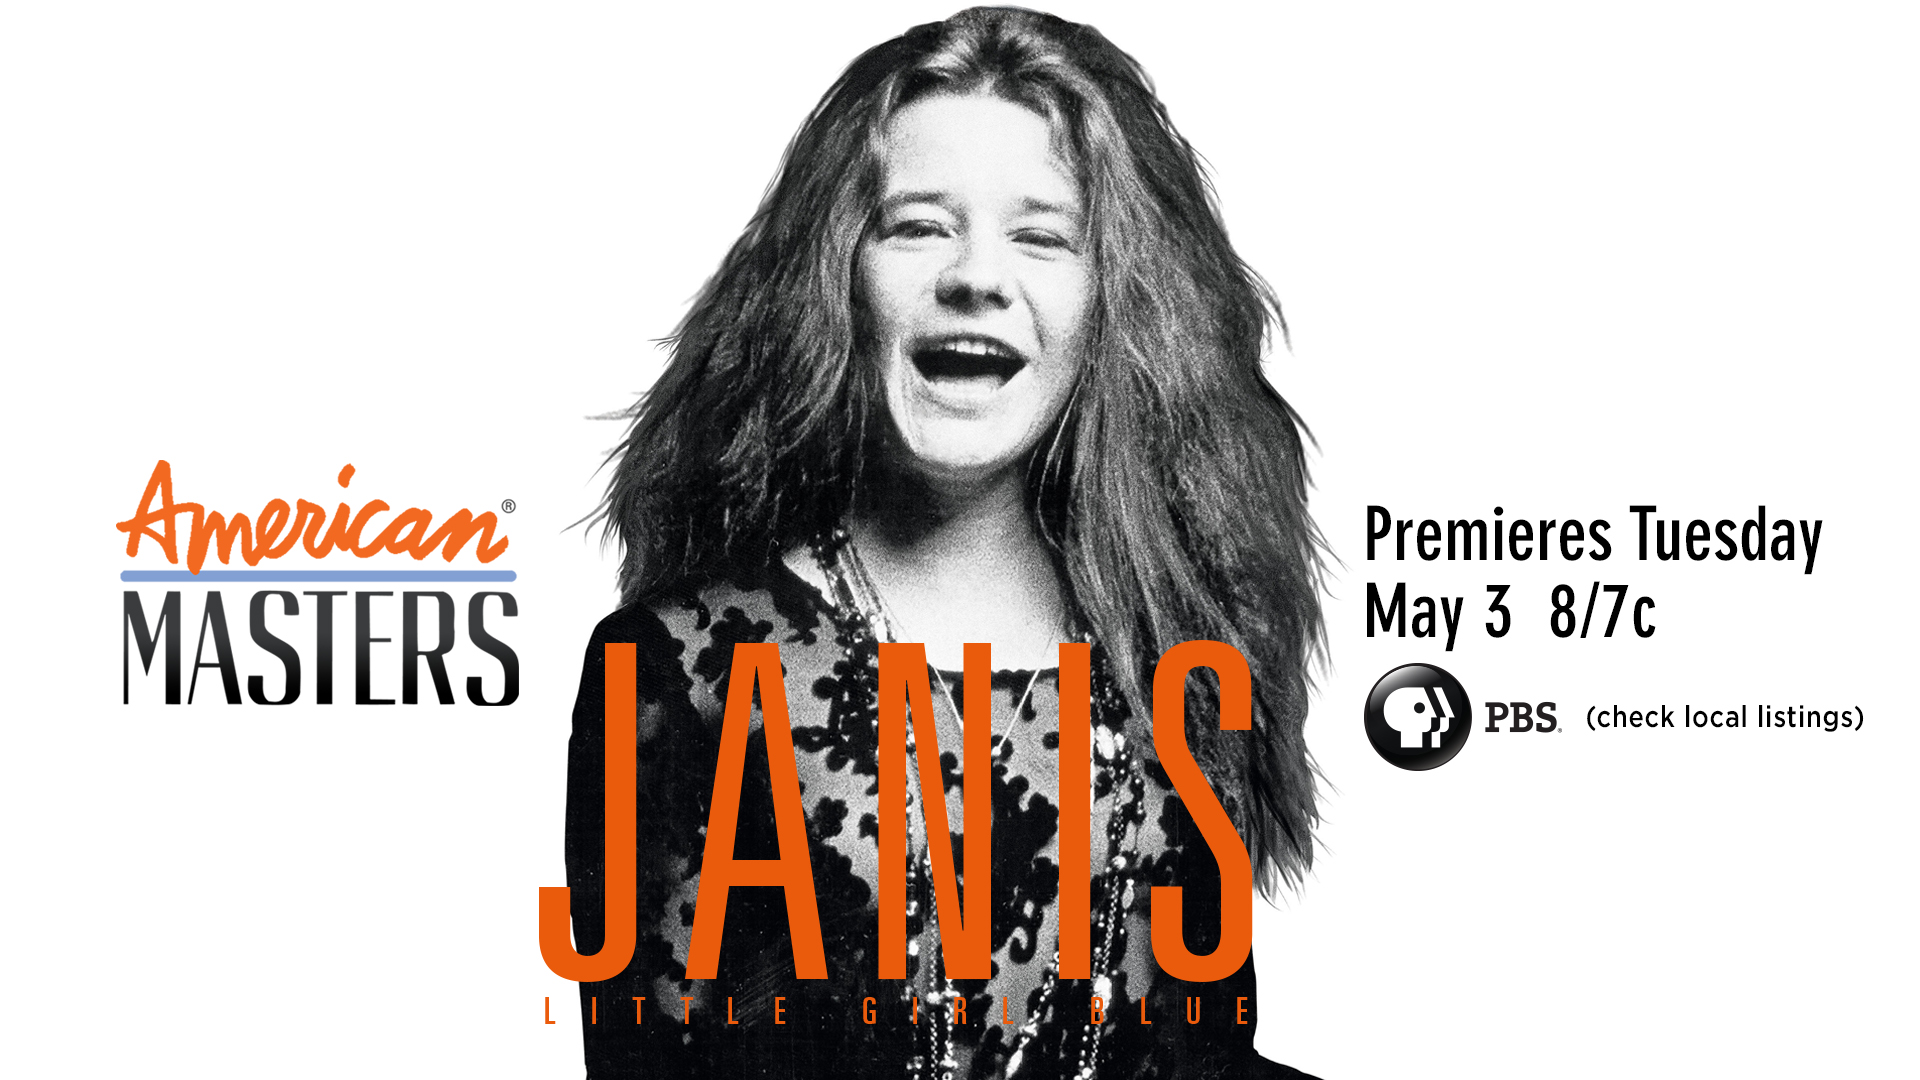 Janis Joplin: Little Girl Blue, Janis Joplin Biographical Timeline, American Masters